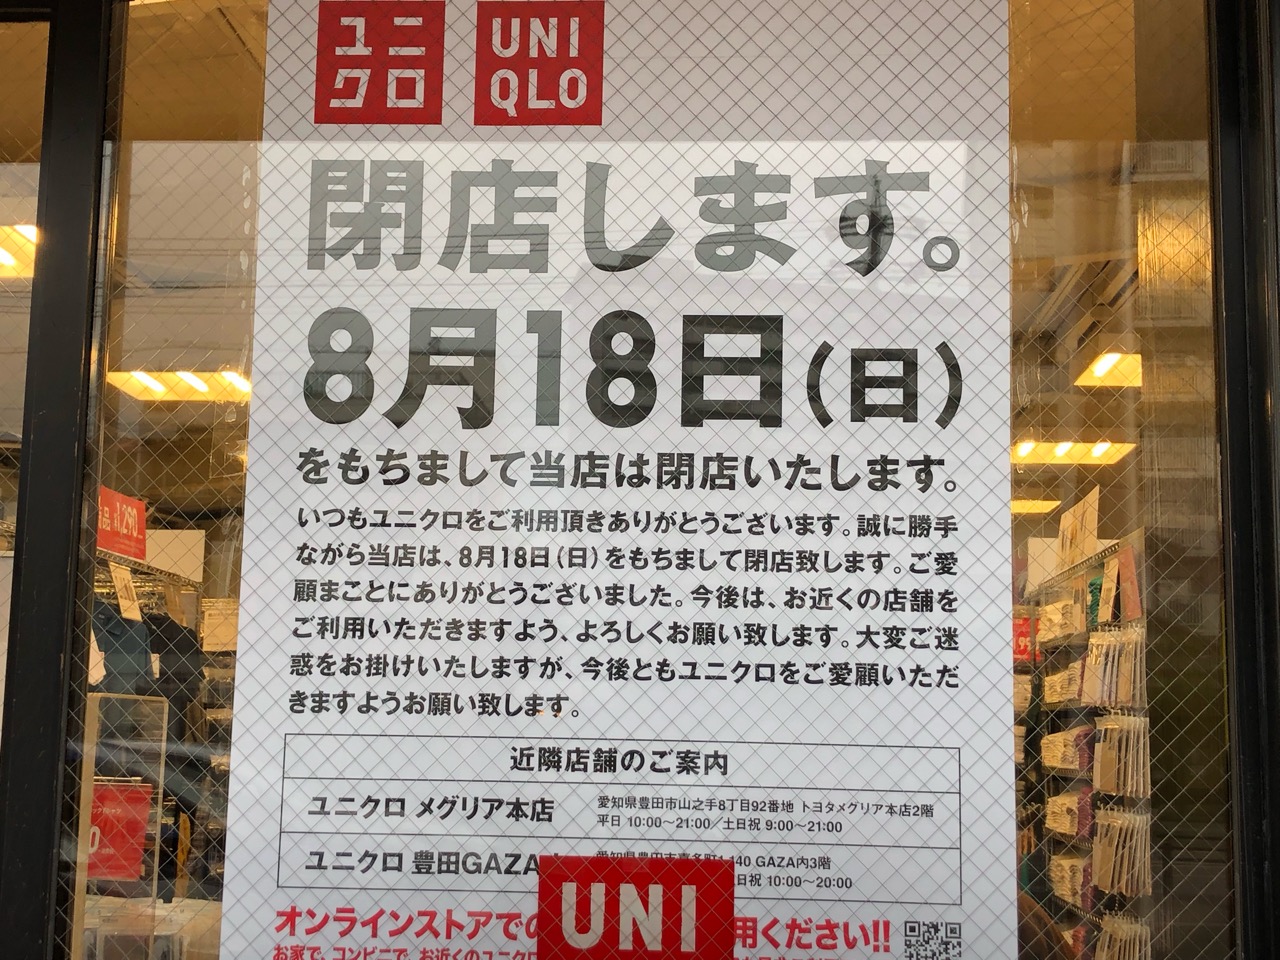 豊田市 悲報 Uniqlo豊田高橋店が 8月18日 日 に閉店予定です 号外net 豊田市